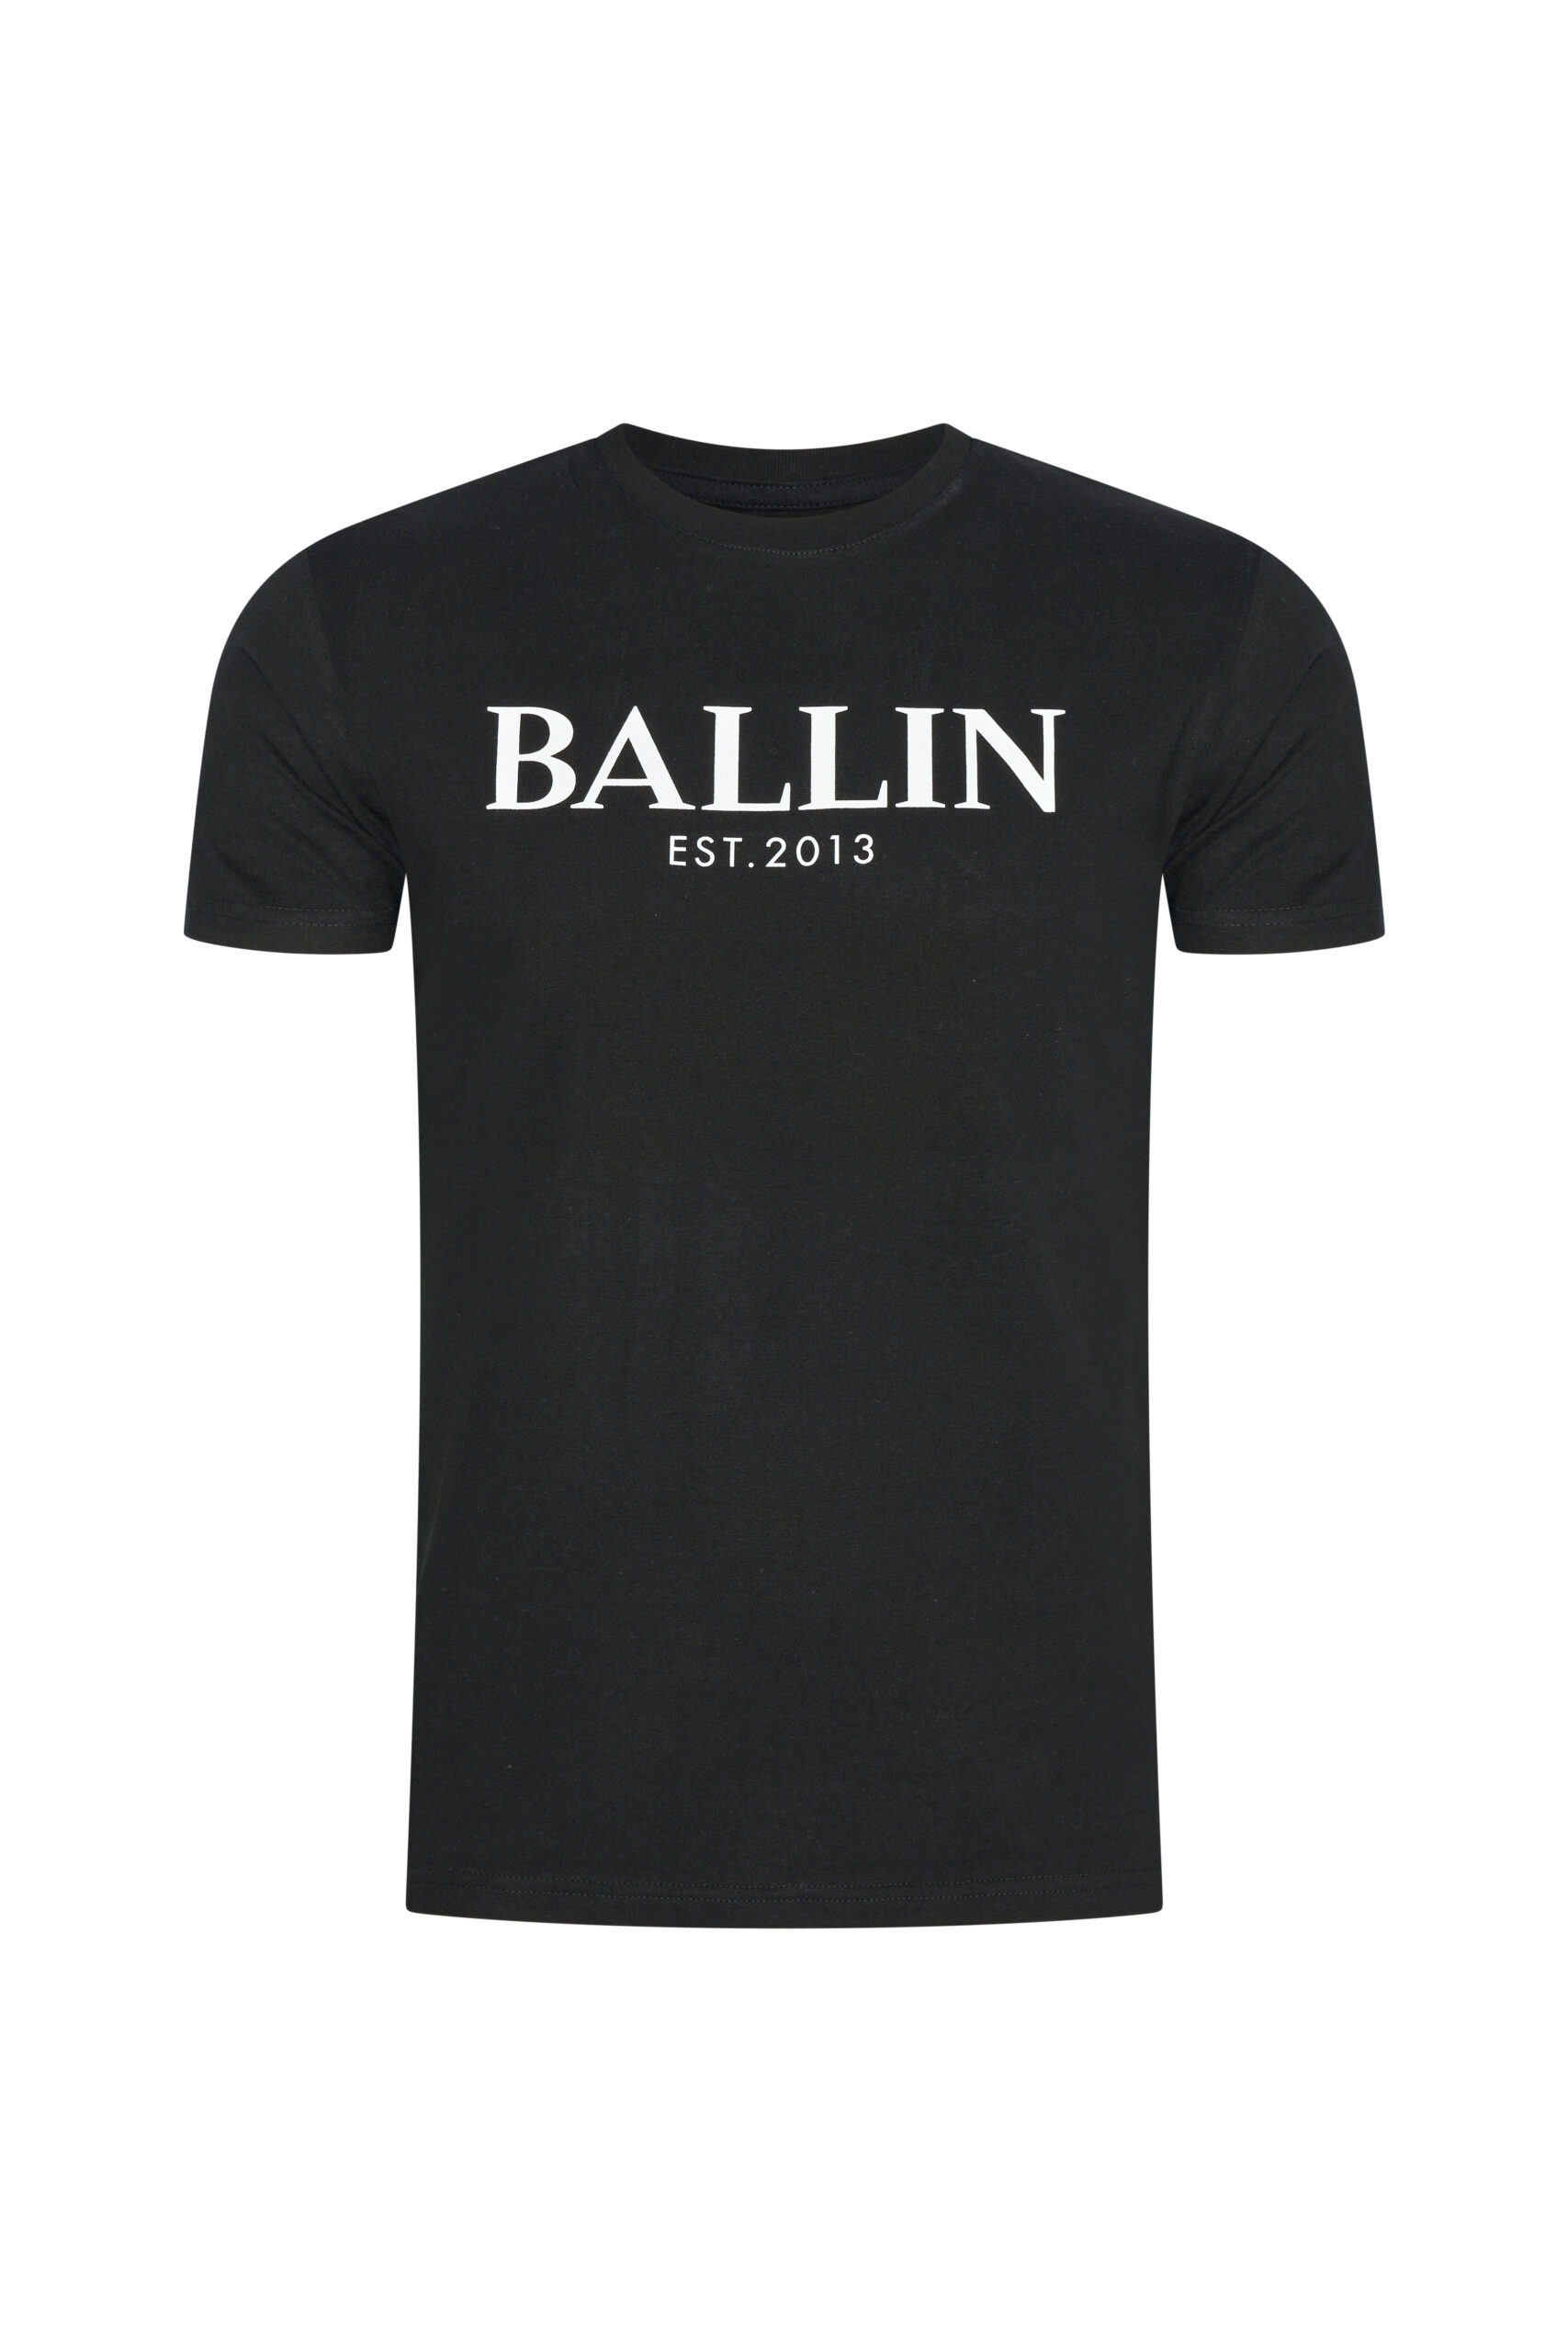 Afbeelding van Ballin Est. 2013 Heren t-shirt est 2013